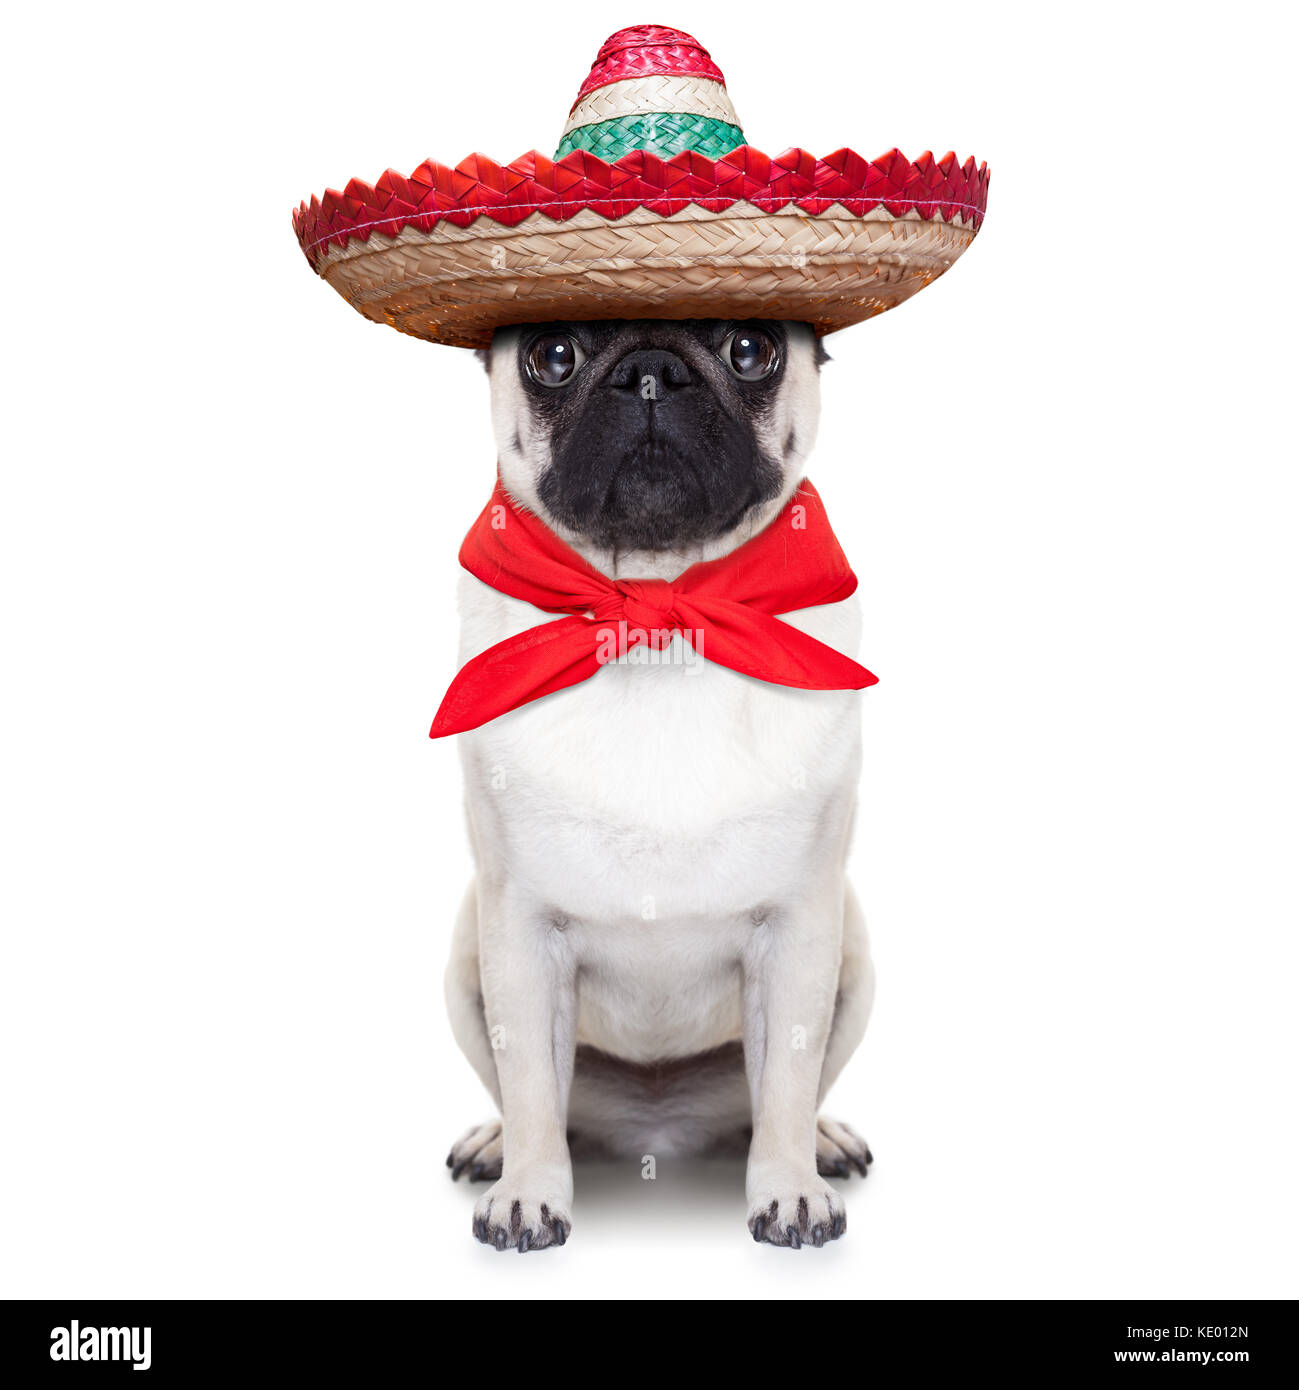 Chien mexicain sombrero avec grand chapeau et cravate rouge Photo Stock -  Alamy